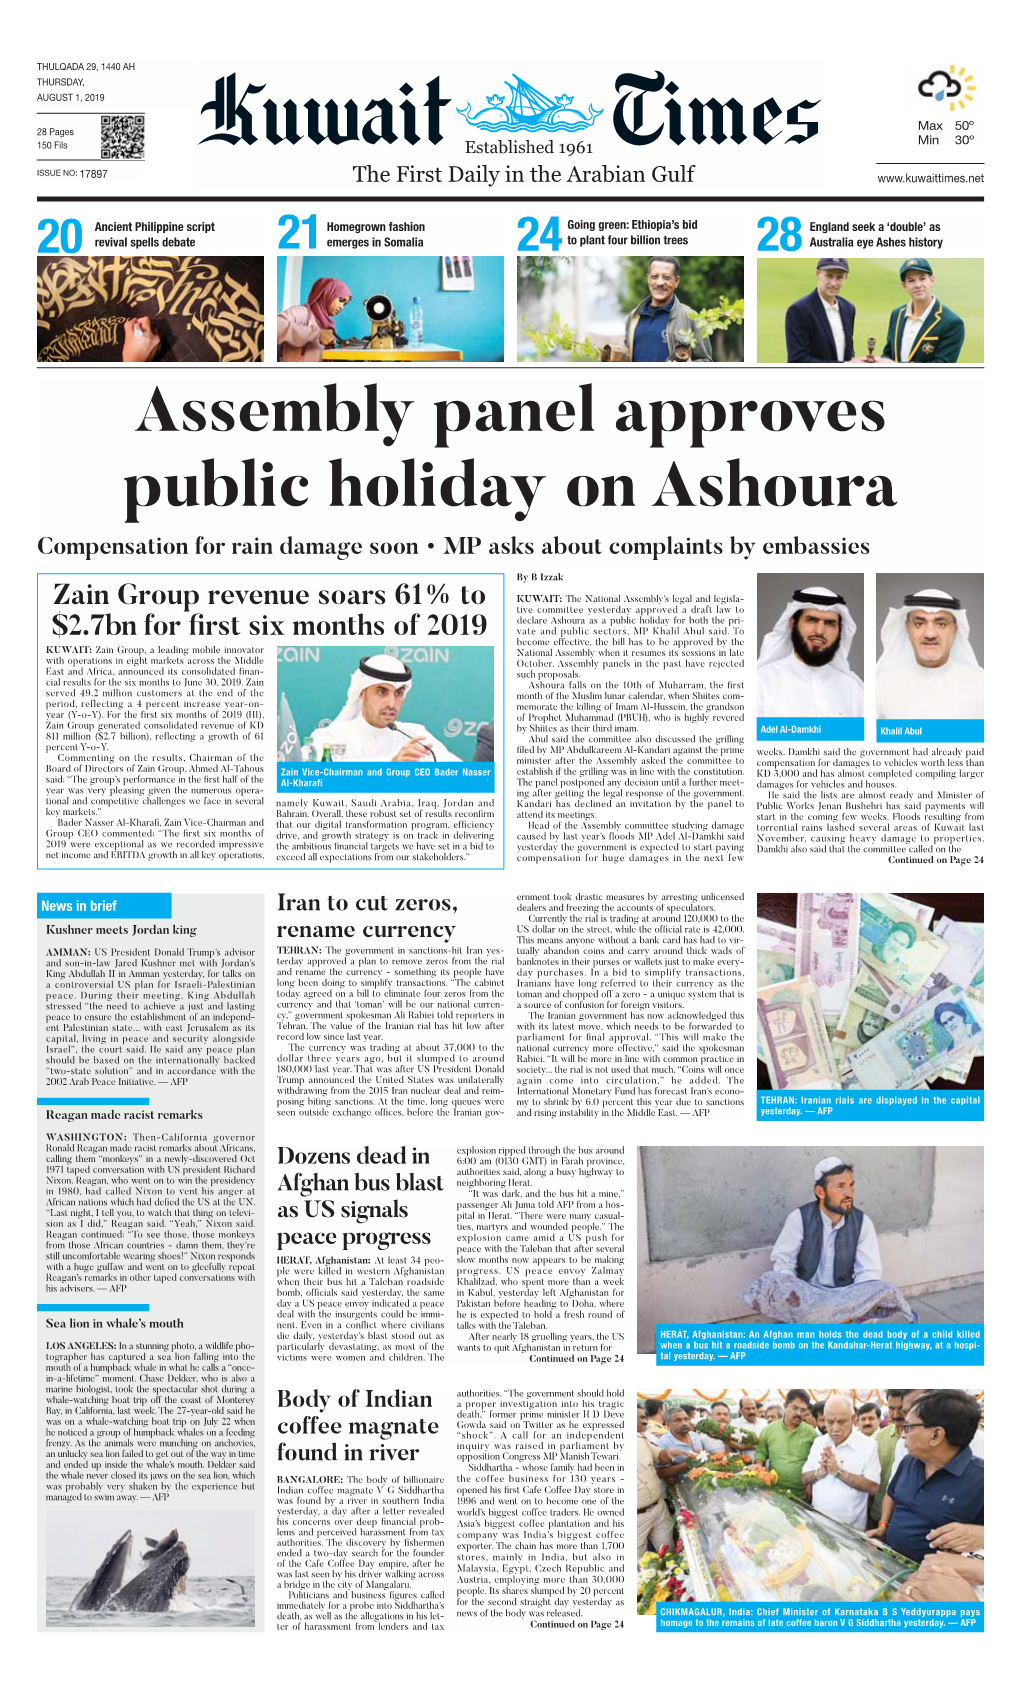 Kuwaittimes 1-8-2019.Qxp Layout 1